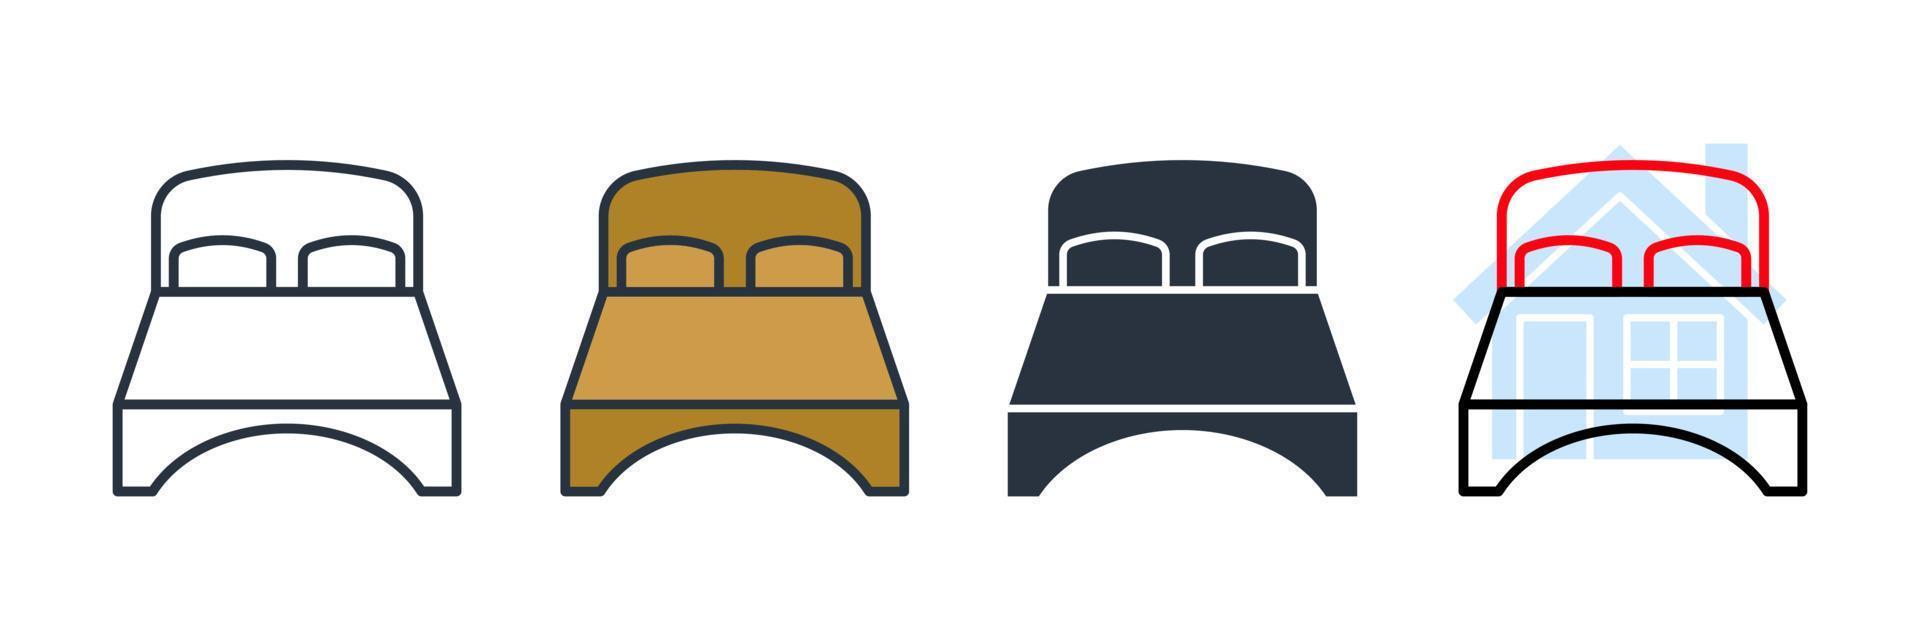 illustrazione vettoriale del logo dell'icona della camera da letto. modello di simbolo del letto matrimoniale per la raccolta di grafica e web design